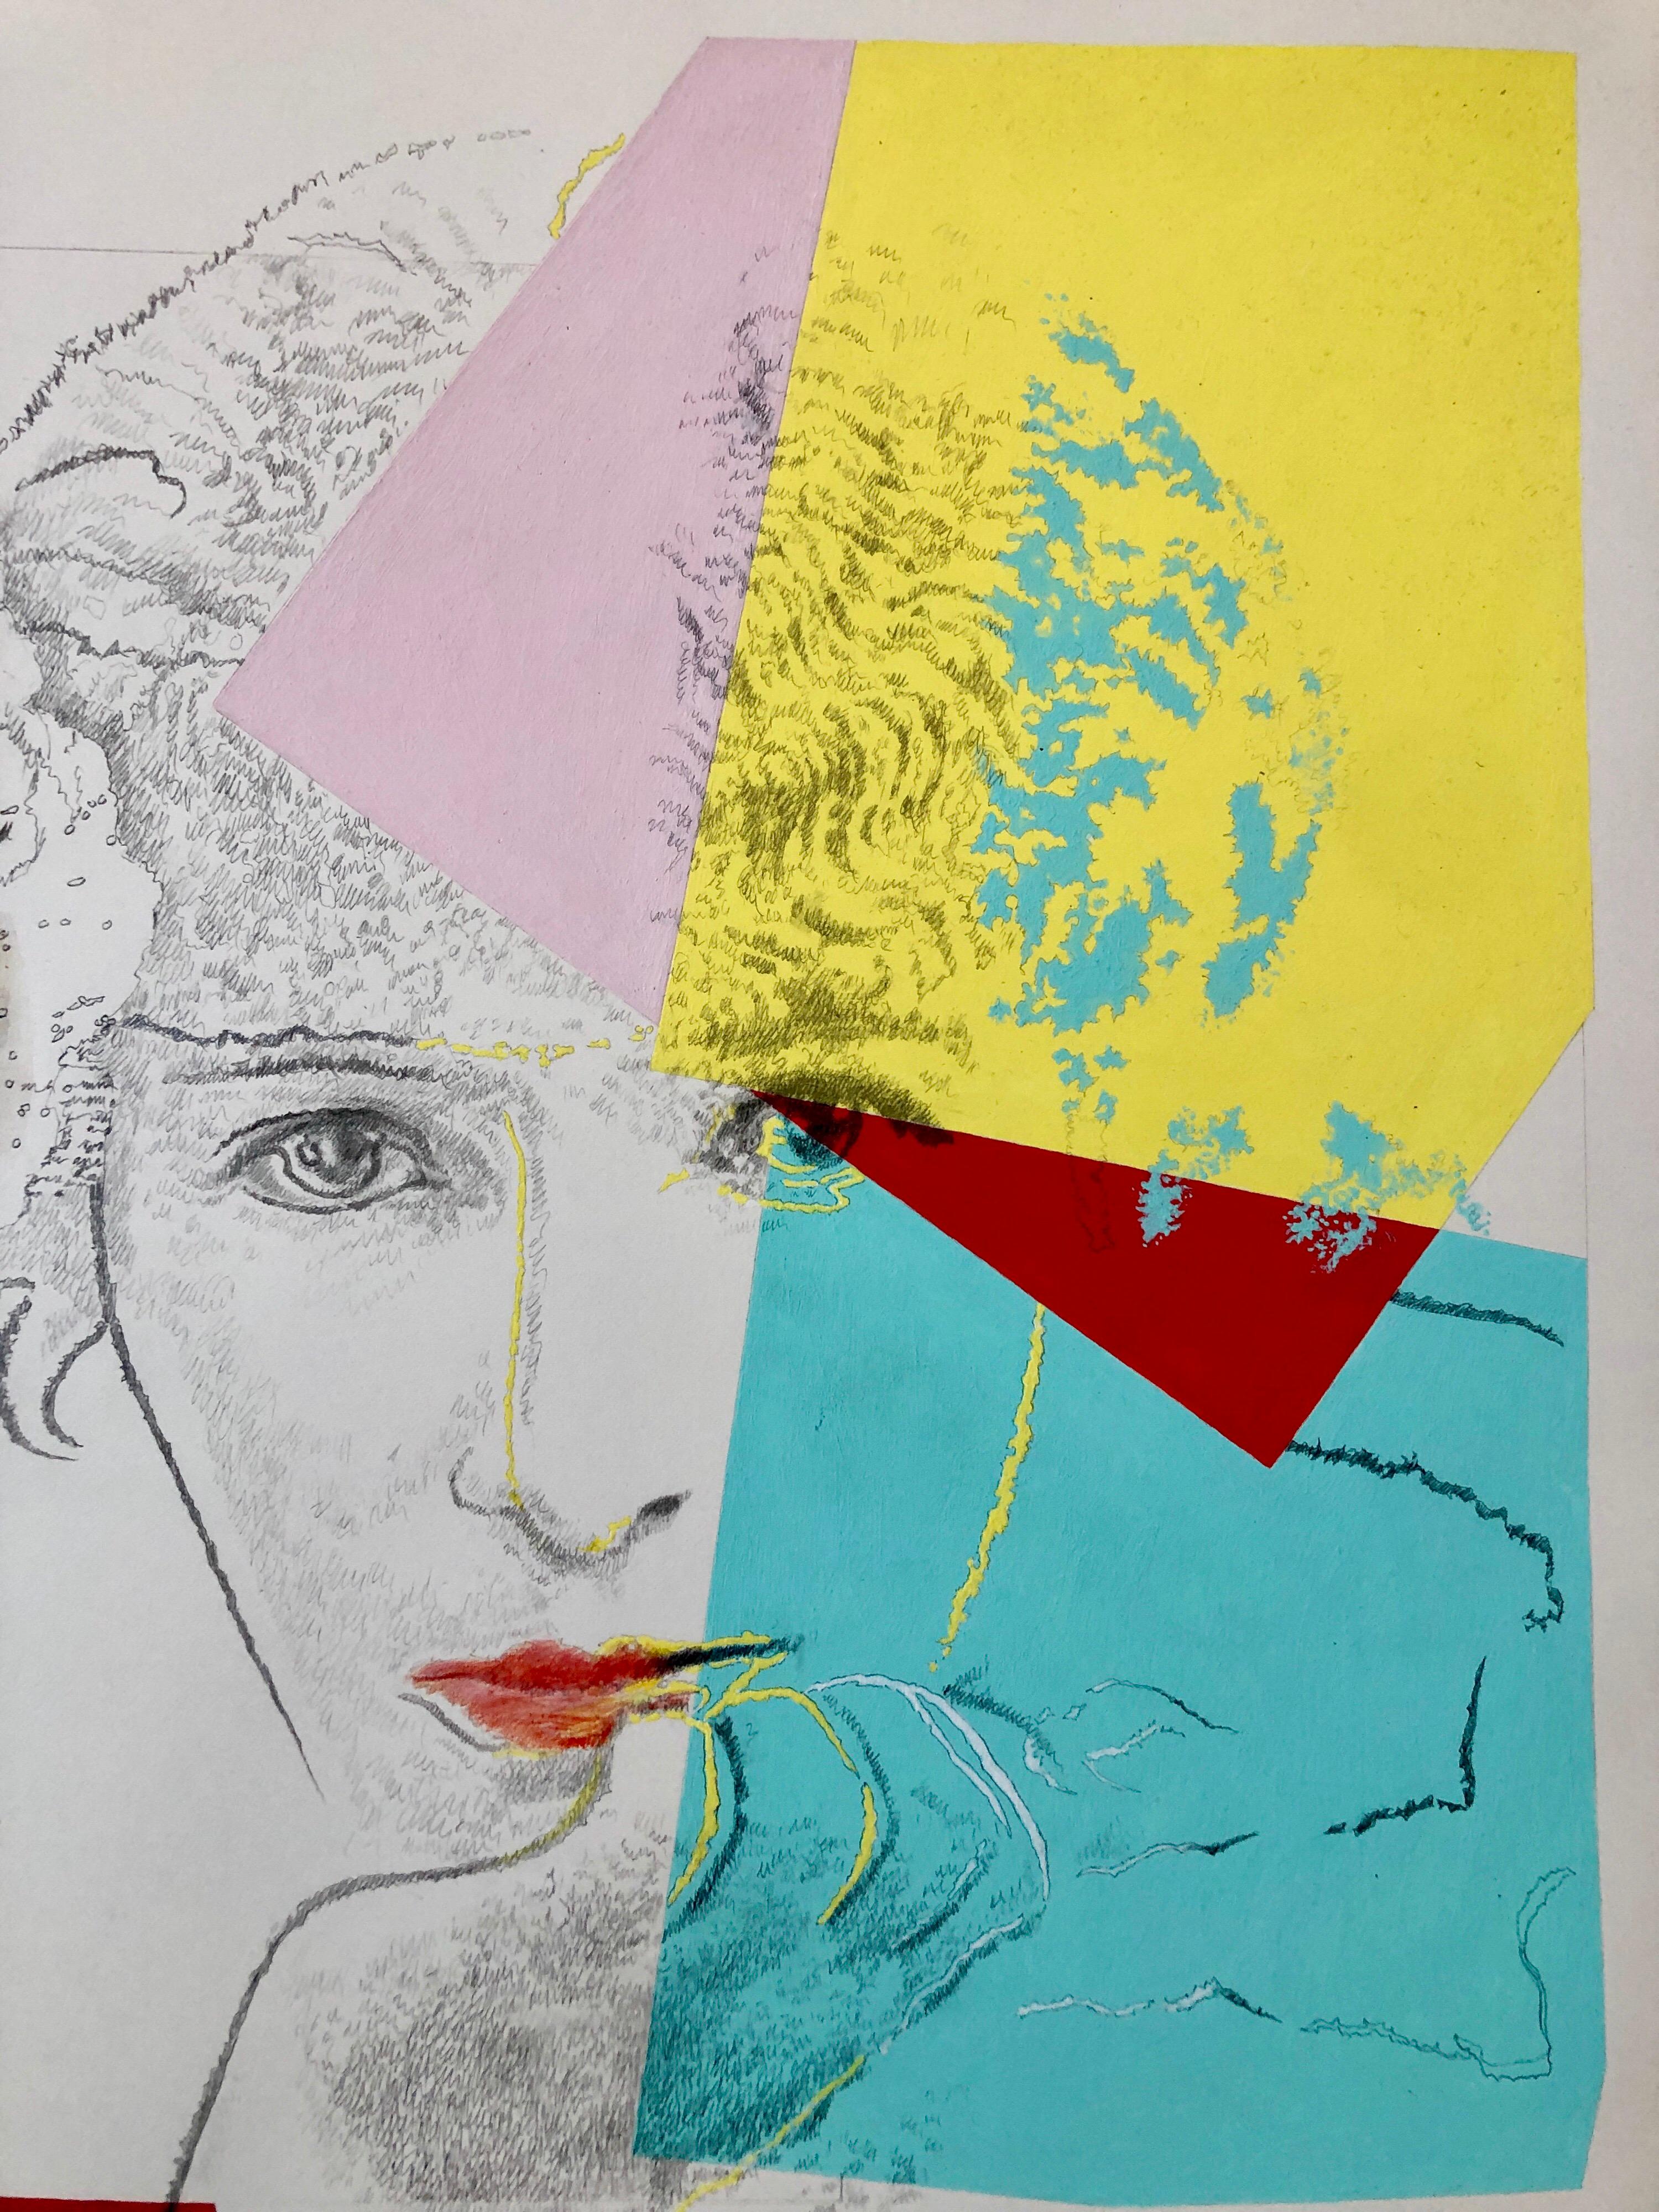 Nature morte avec (Thomas) Sarah et (Andy) Warhol, (actrice française Sarah Bernhardt (1844-1923))
Signé à la main au crayon, daté 1994
porte l'étiquette de la galerie OK Harris Gallery à New York.


Josef Alan Levi (1938) est un artiste américain